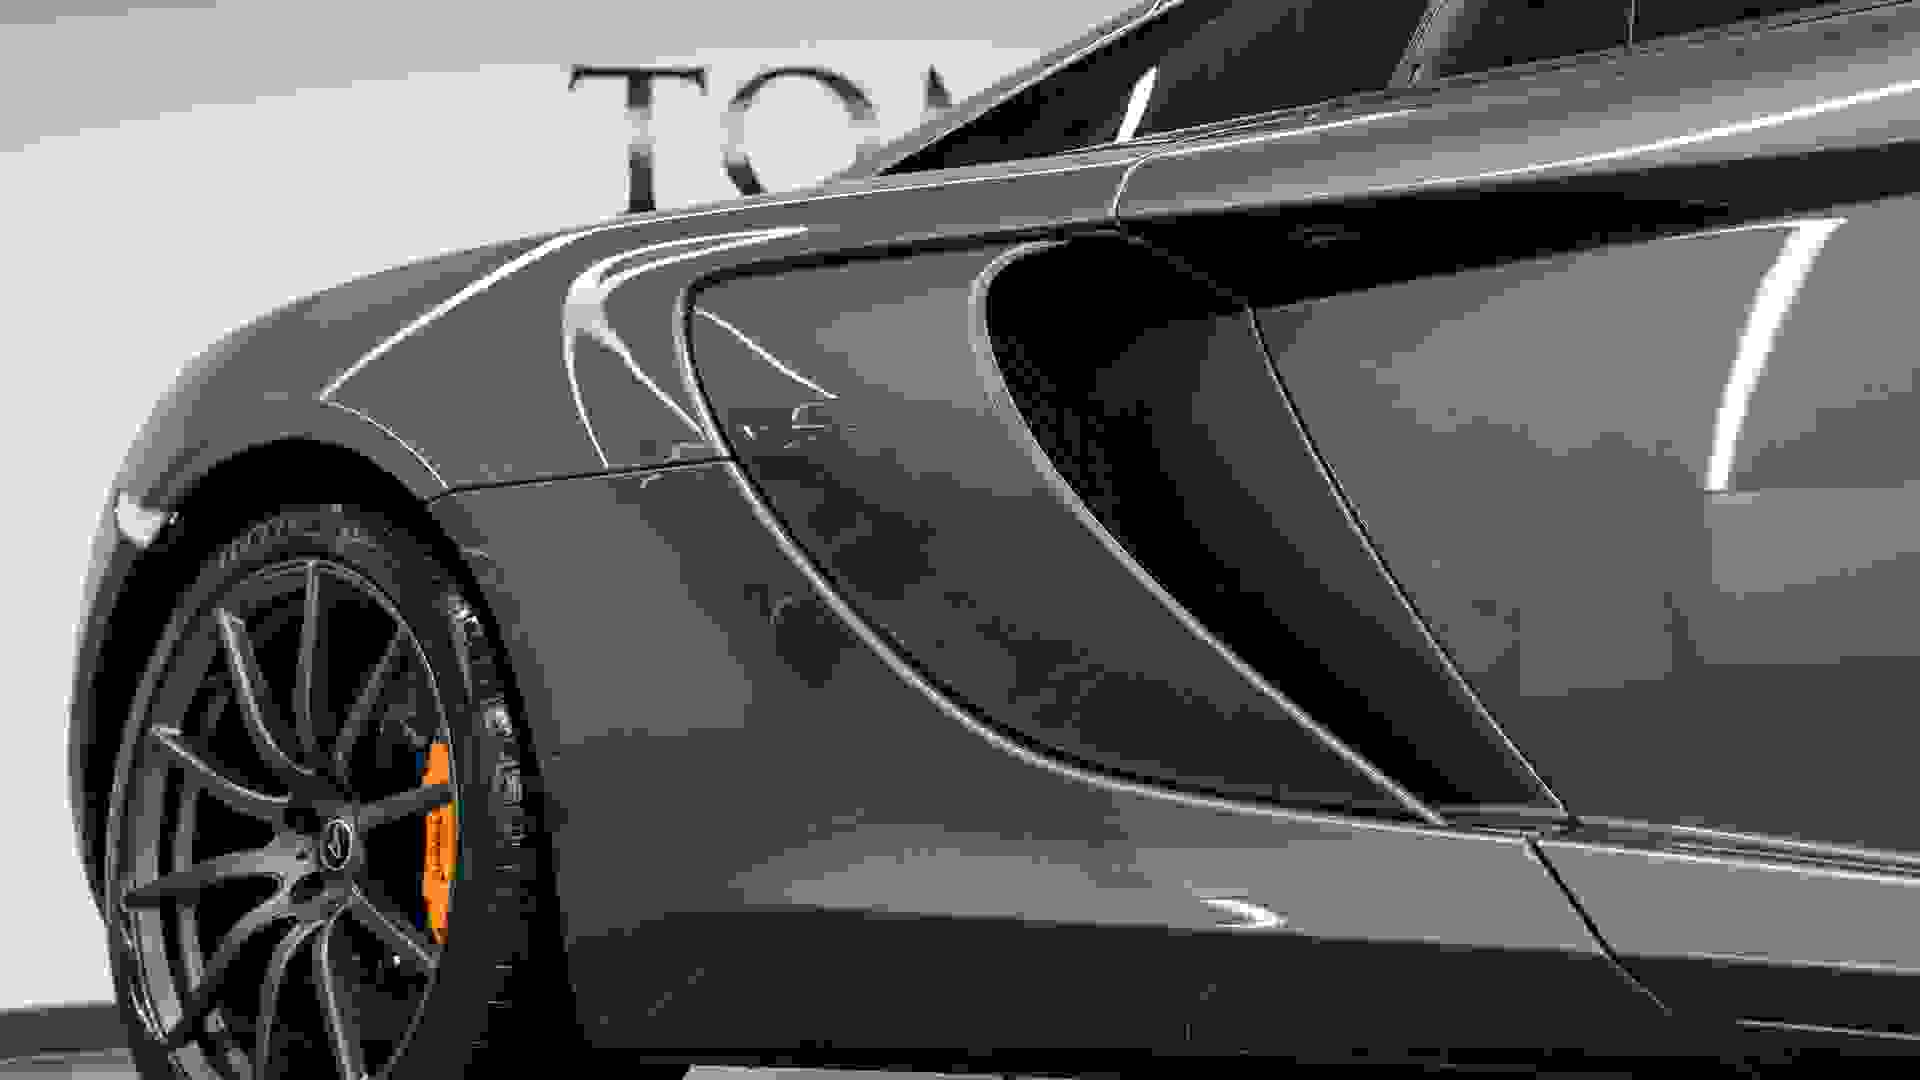 McLaren 650S Photo e05505a9-af63-4d9a-852d-0447da17b726.jpg